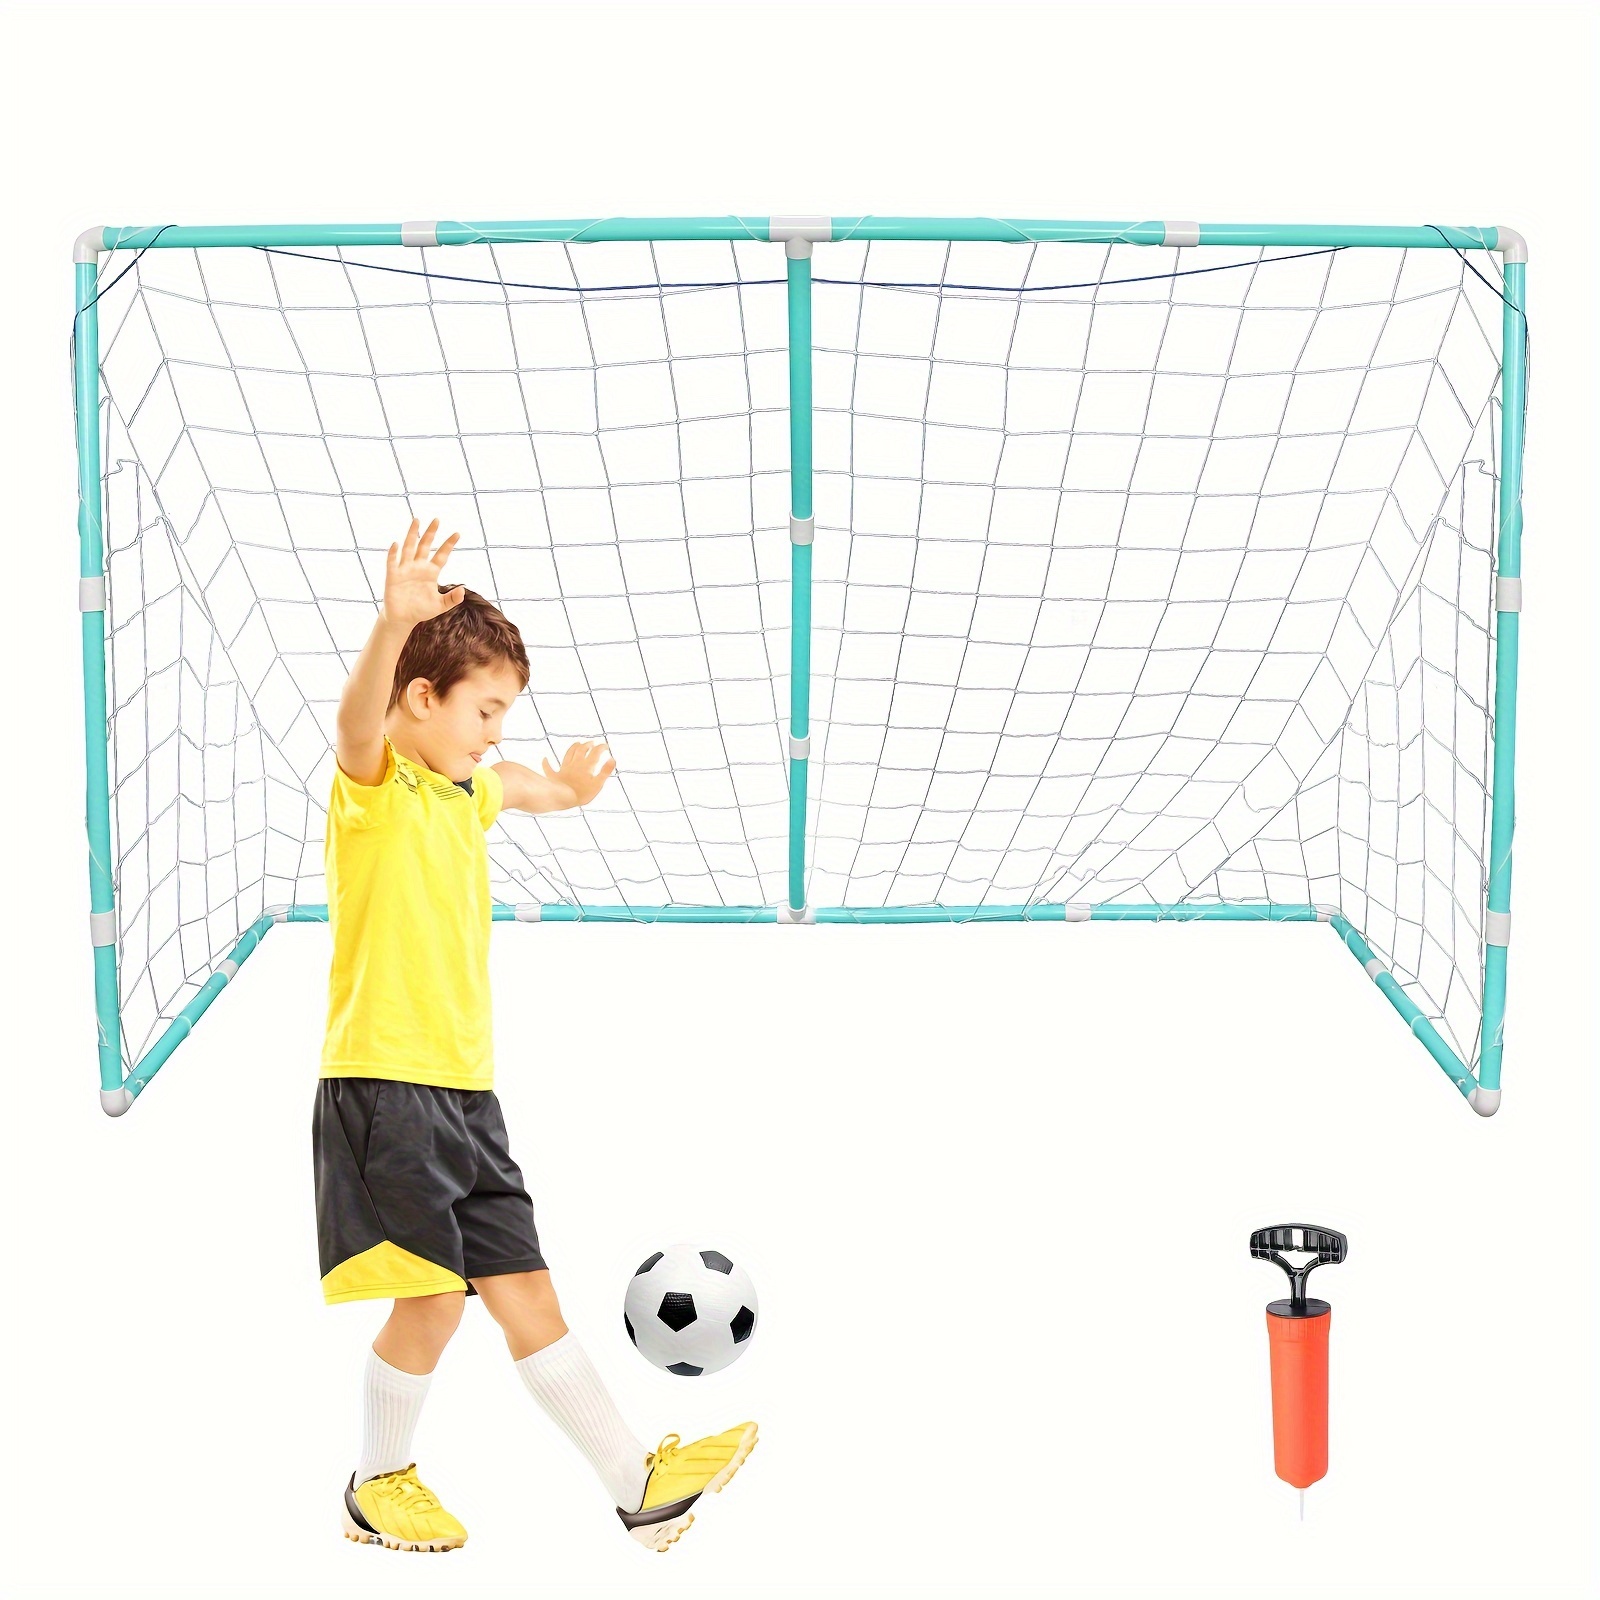  Teerwere Portería de fútbol portátil pequeña para interiores y  niños, plegable, portátil, para escuela primaria, juego en casa, al aire  libre (color naranja, tamaño: 47.2 x 19.7 x 31.5 in) 